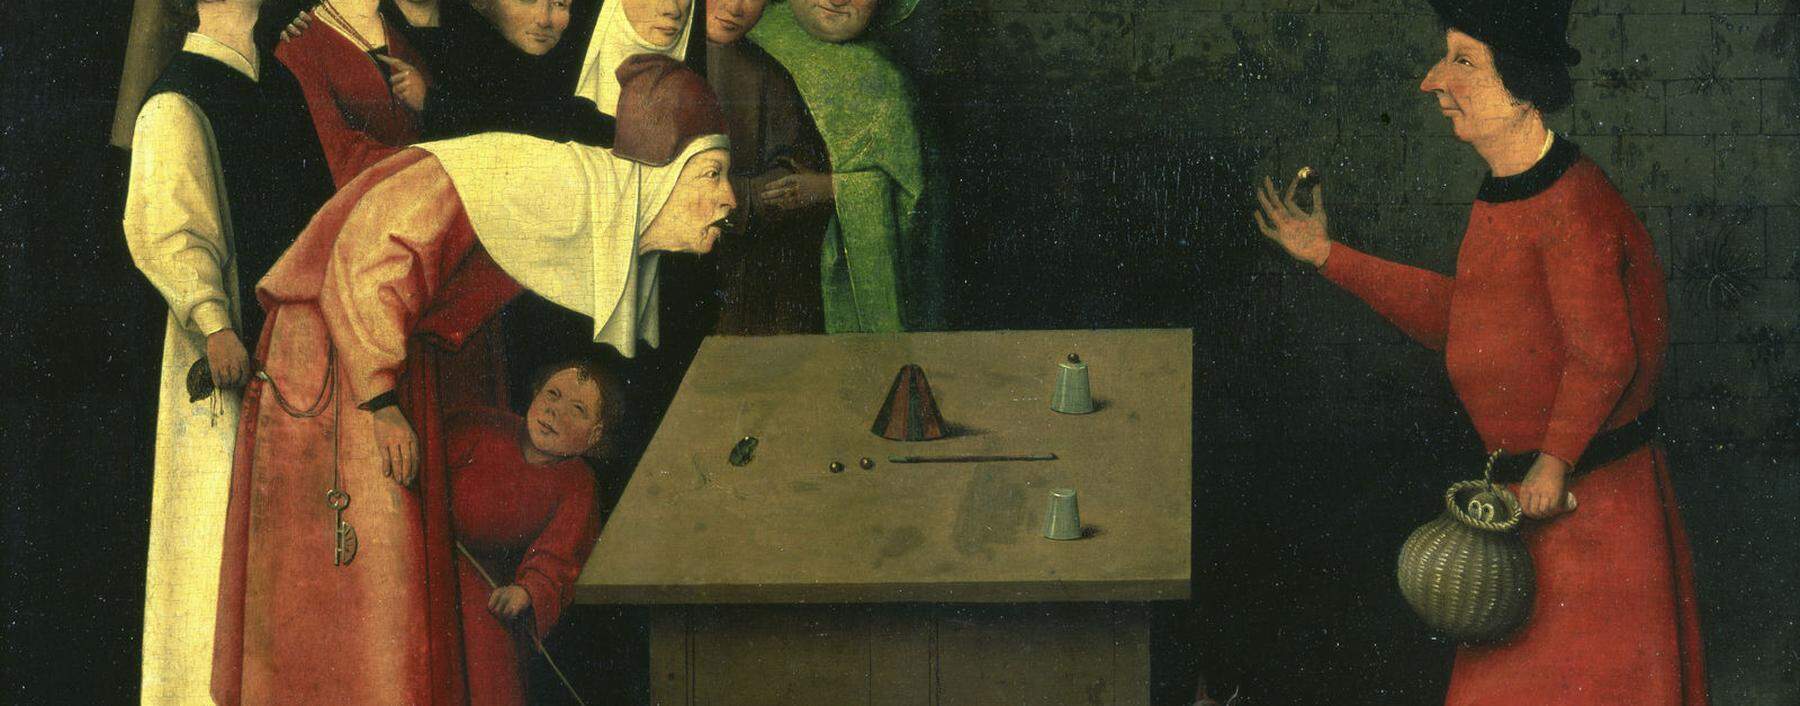 Hieronymus Bosch zeichnete im 15. Jahrhundert den Gaukler auf dem Jahrmarkt, der sein Publikum in den Bann zieht.